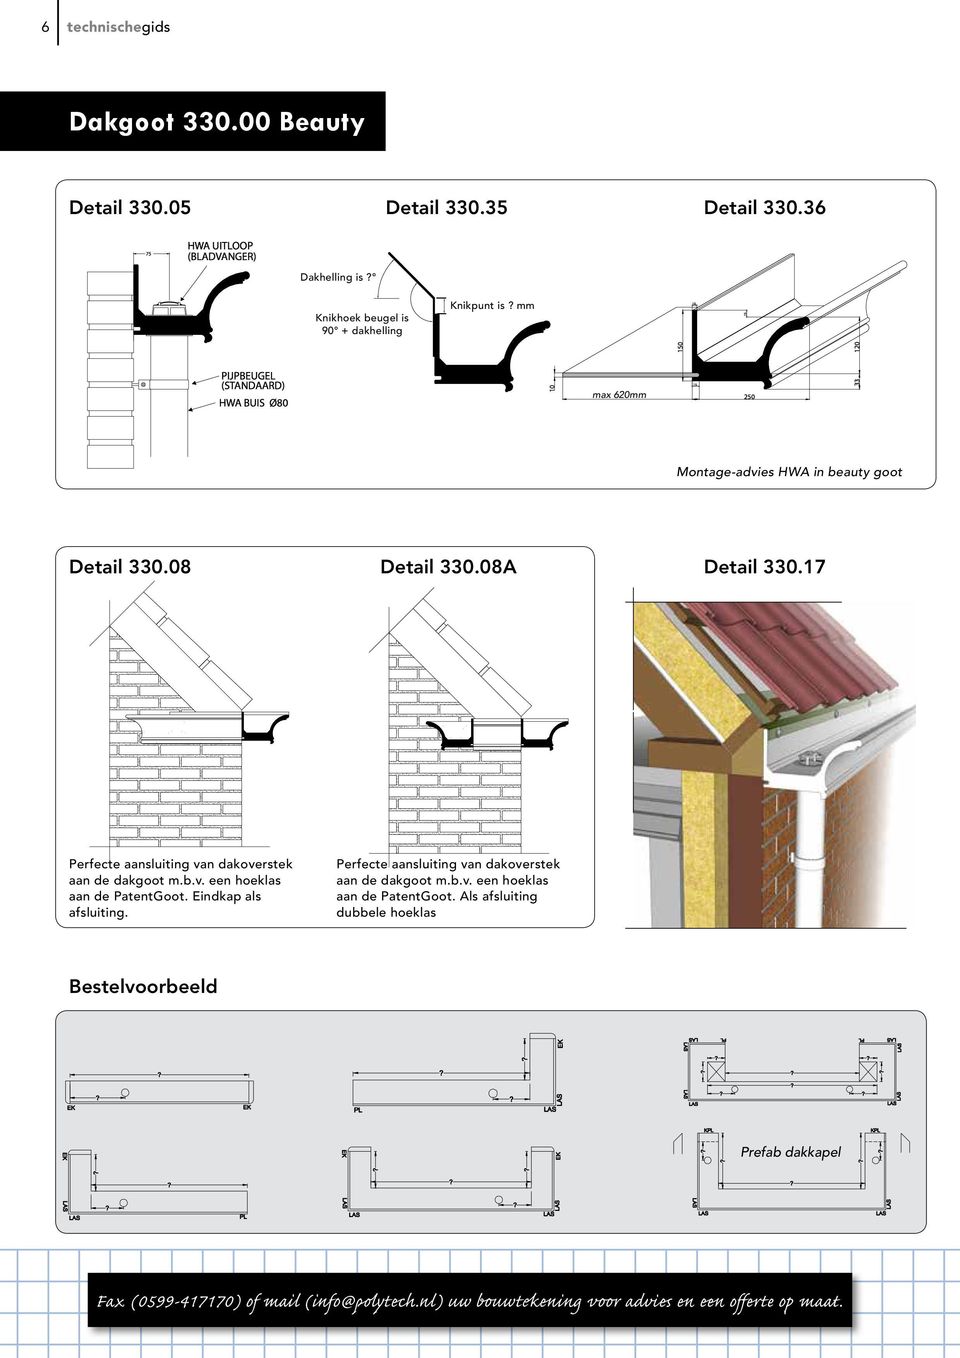 17 Perfecte aansluiting van dakoverstek aan de dakgoot m.b.v. een hoeklas aan de PatentGoot.